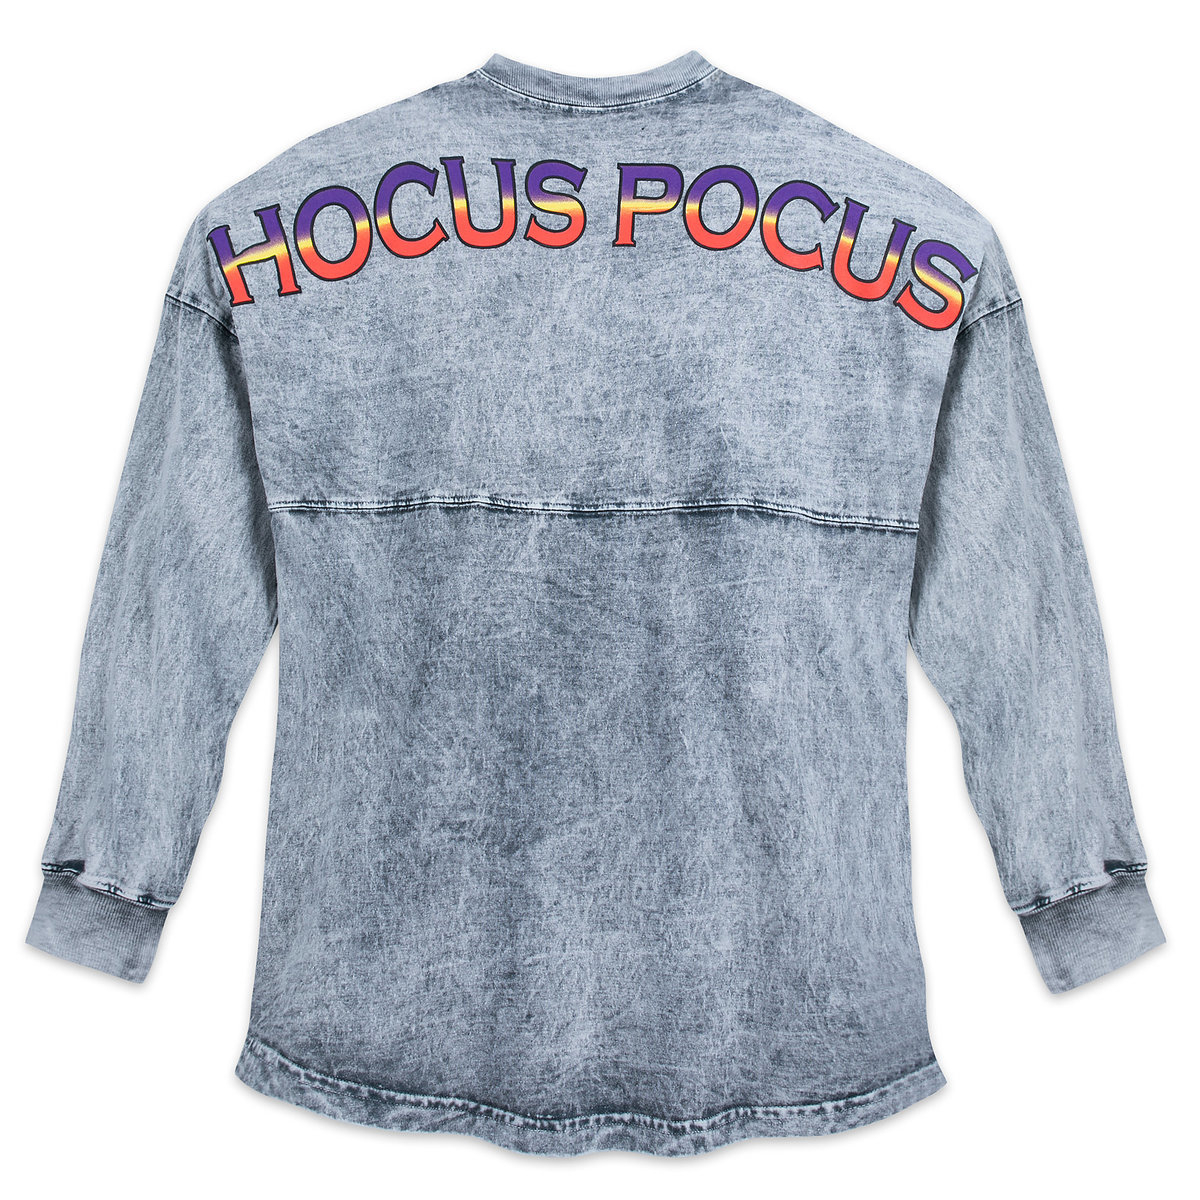 Hocus Pocus Merchandise